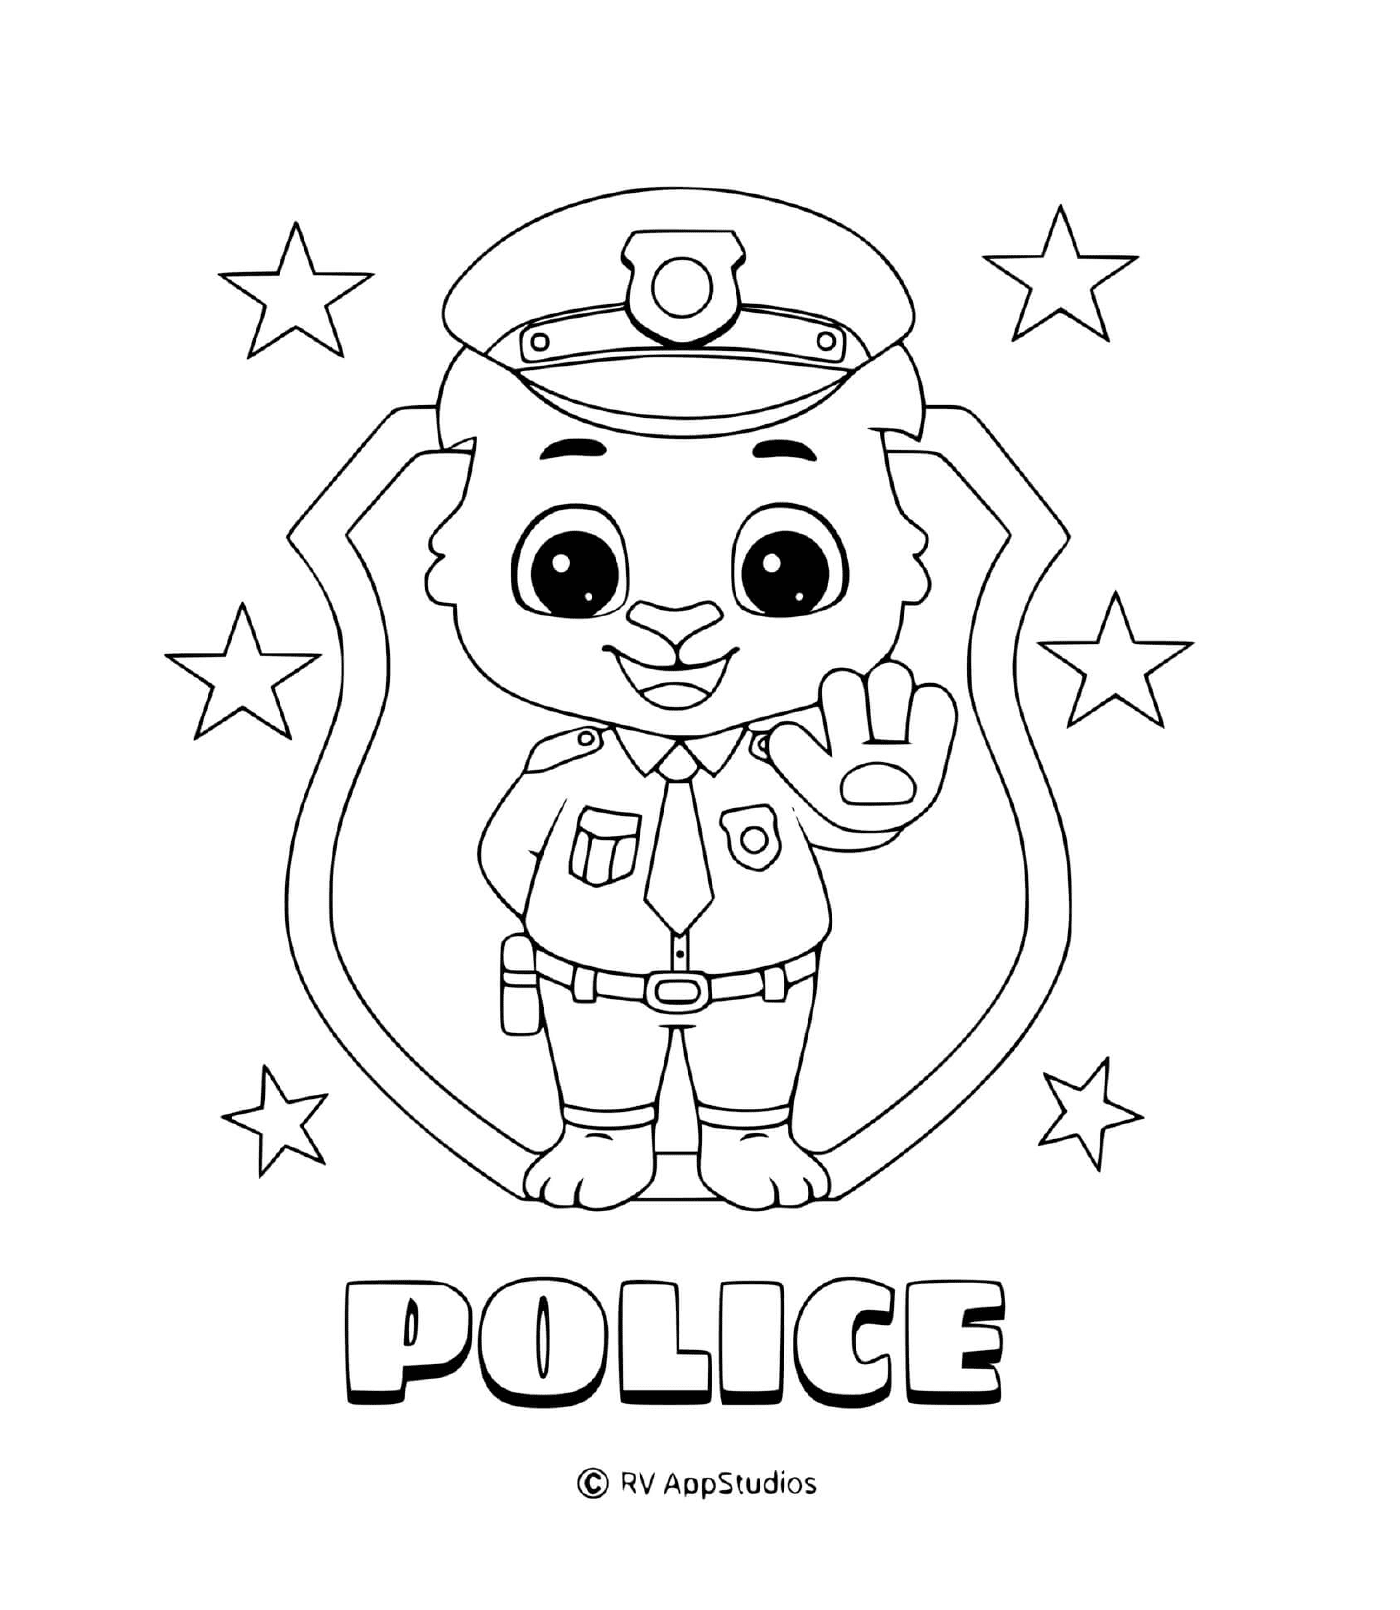   Policier stop, uniforme étoilé 